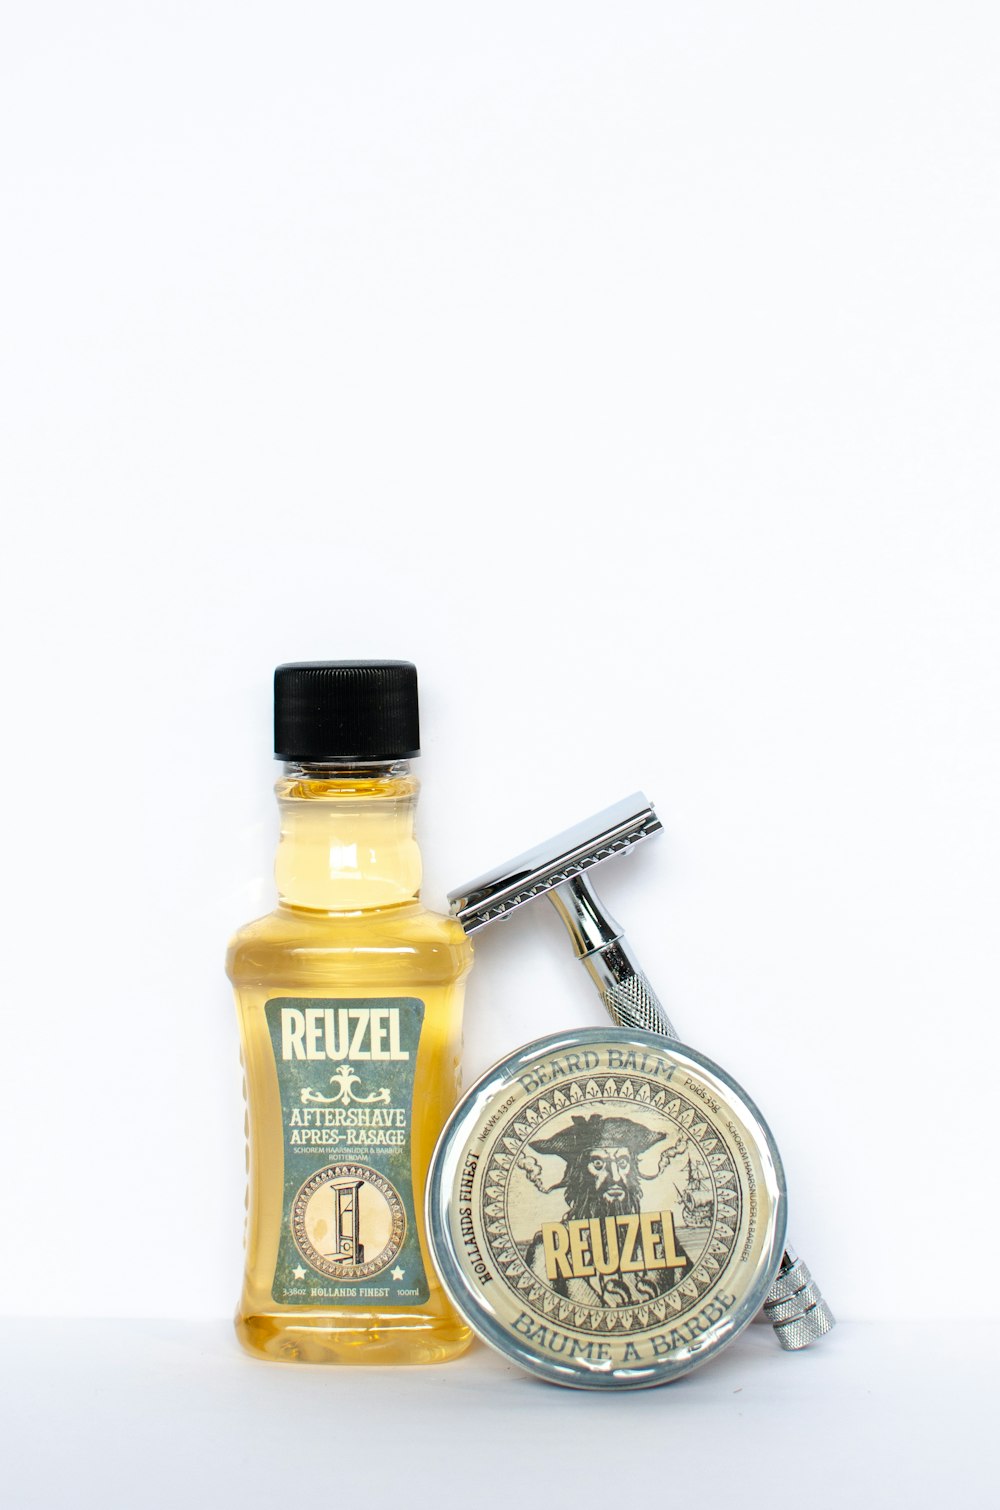 tesco gold honey mustard bottle